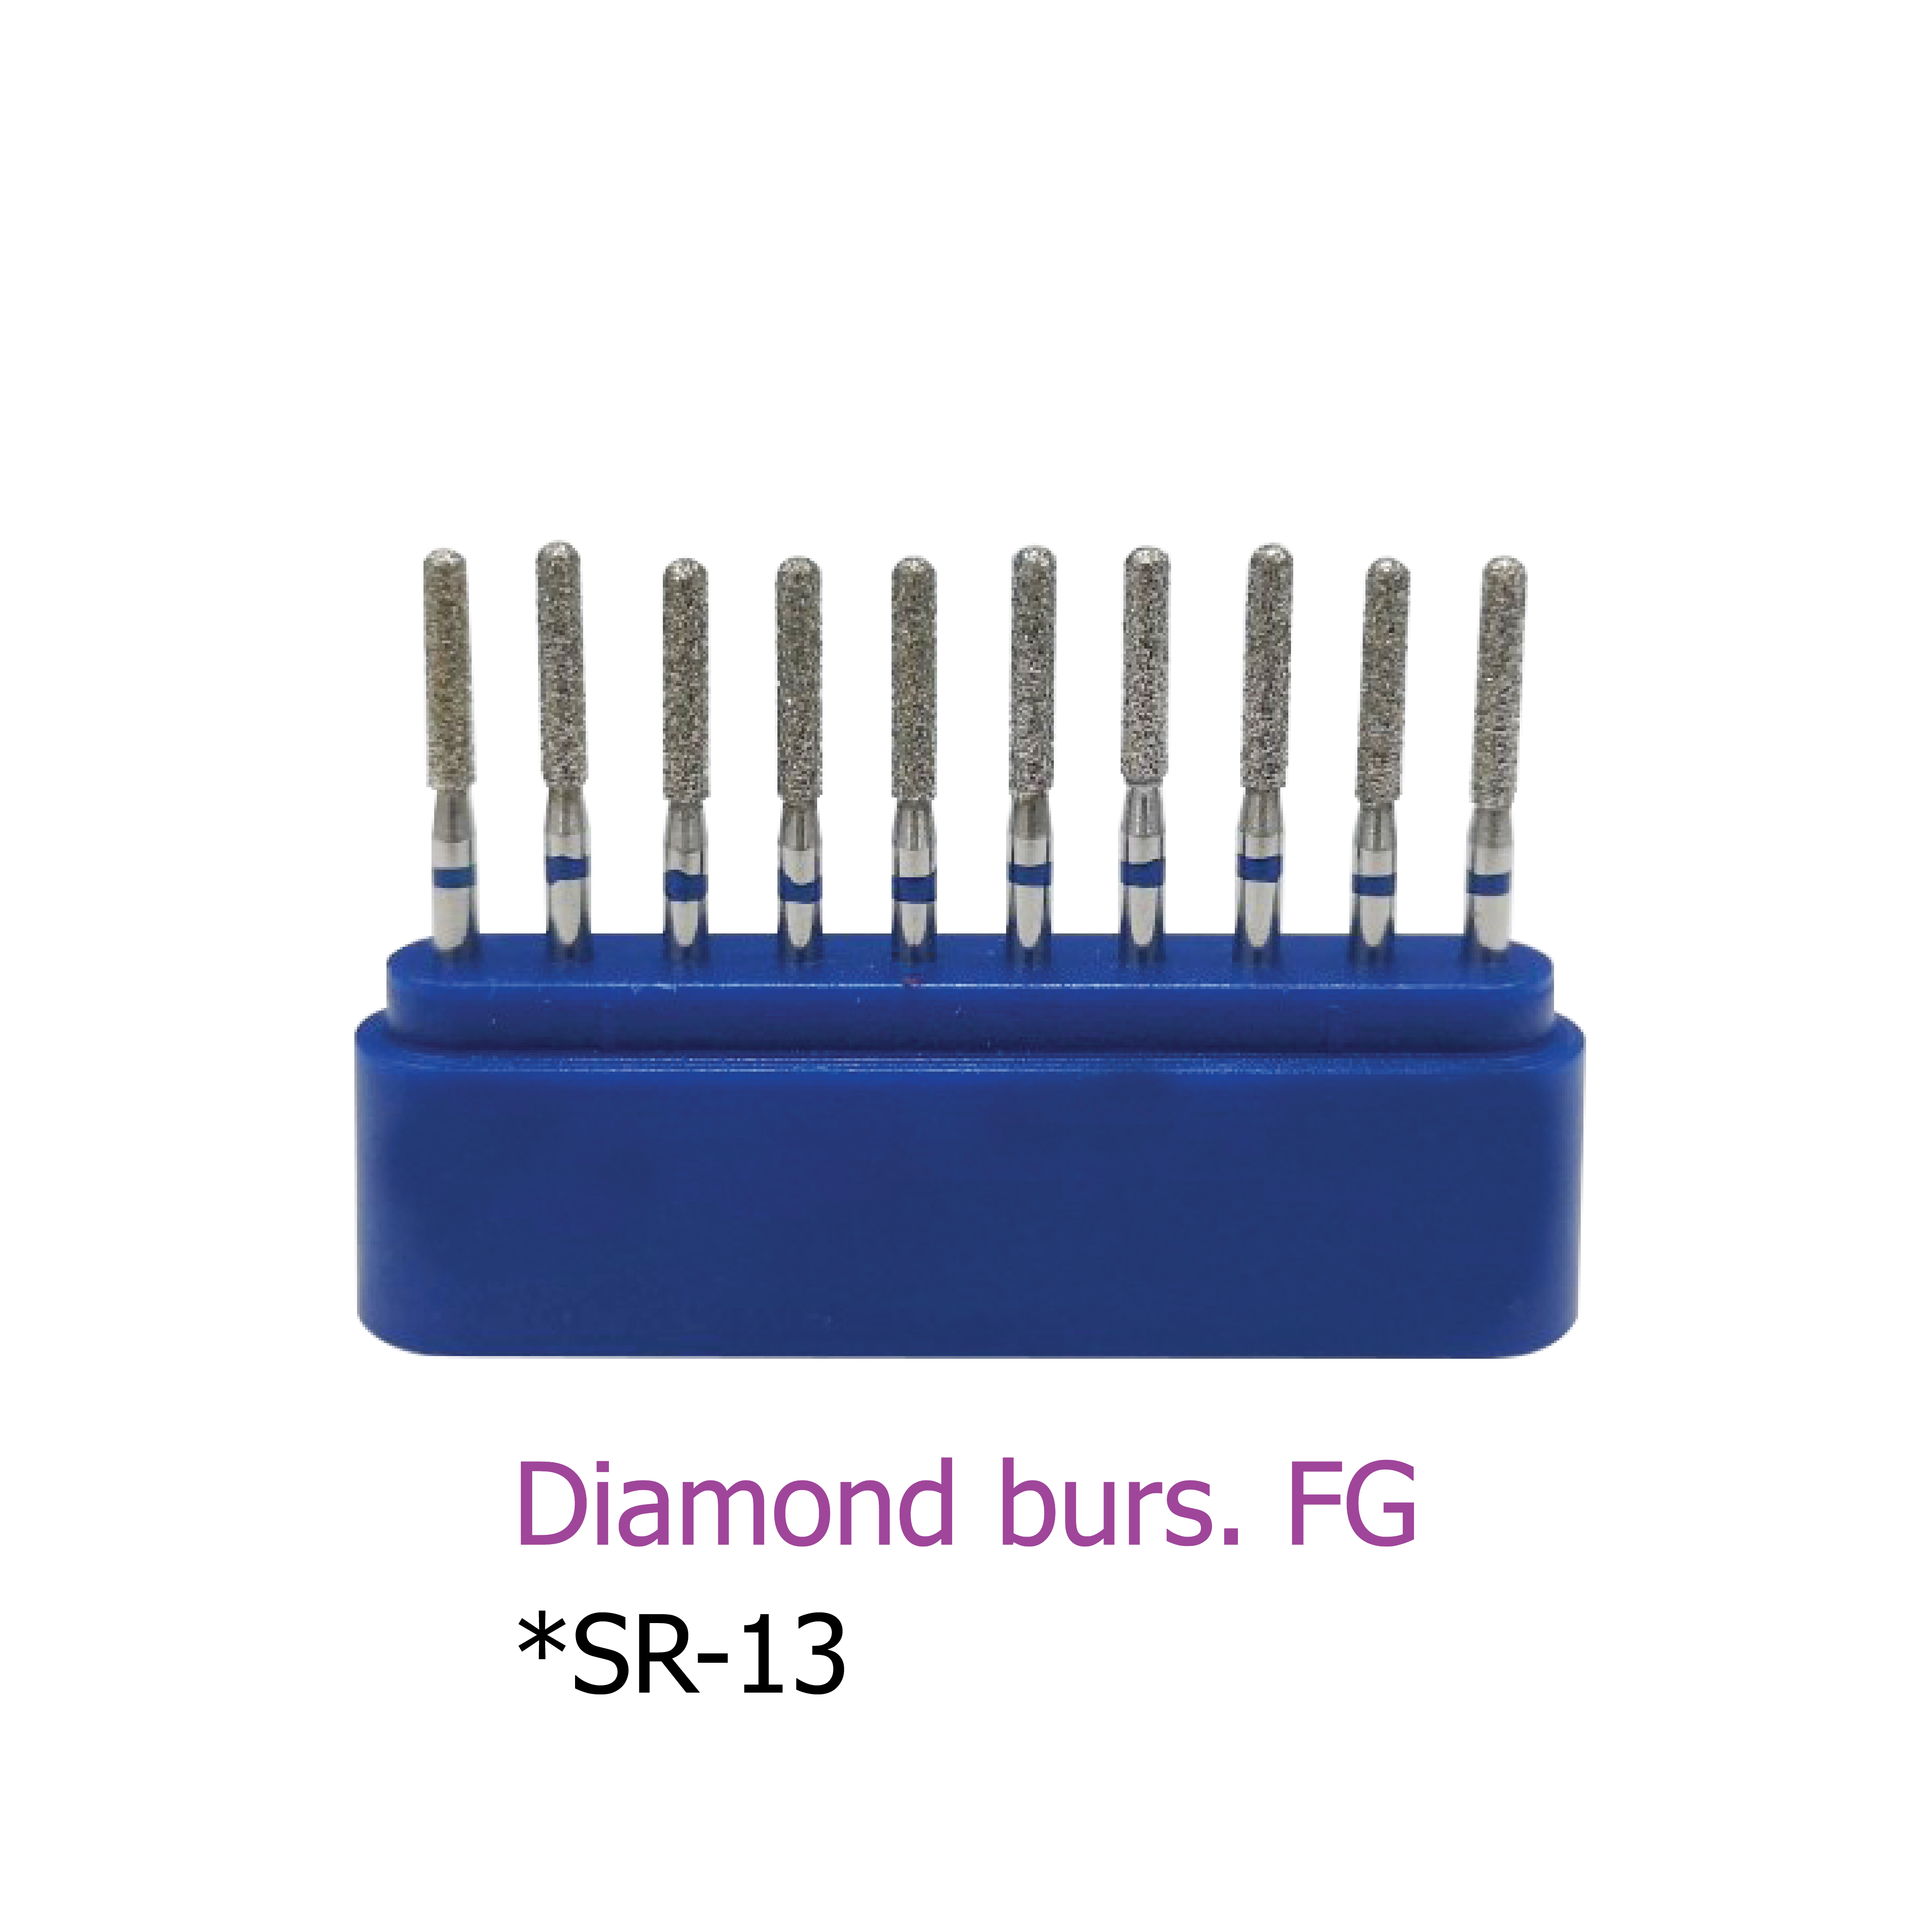 Diamond burs. FG *SR-13